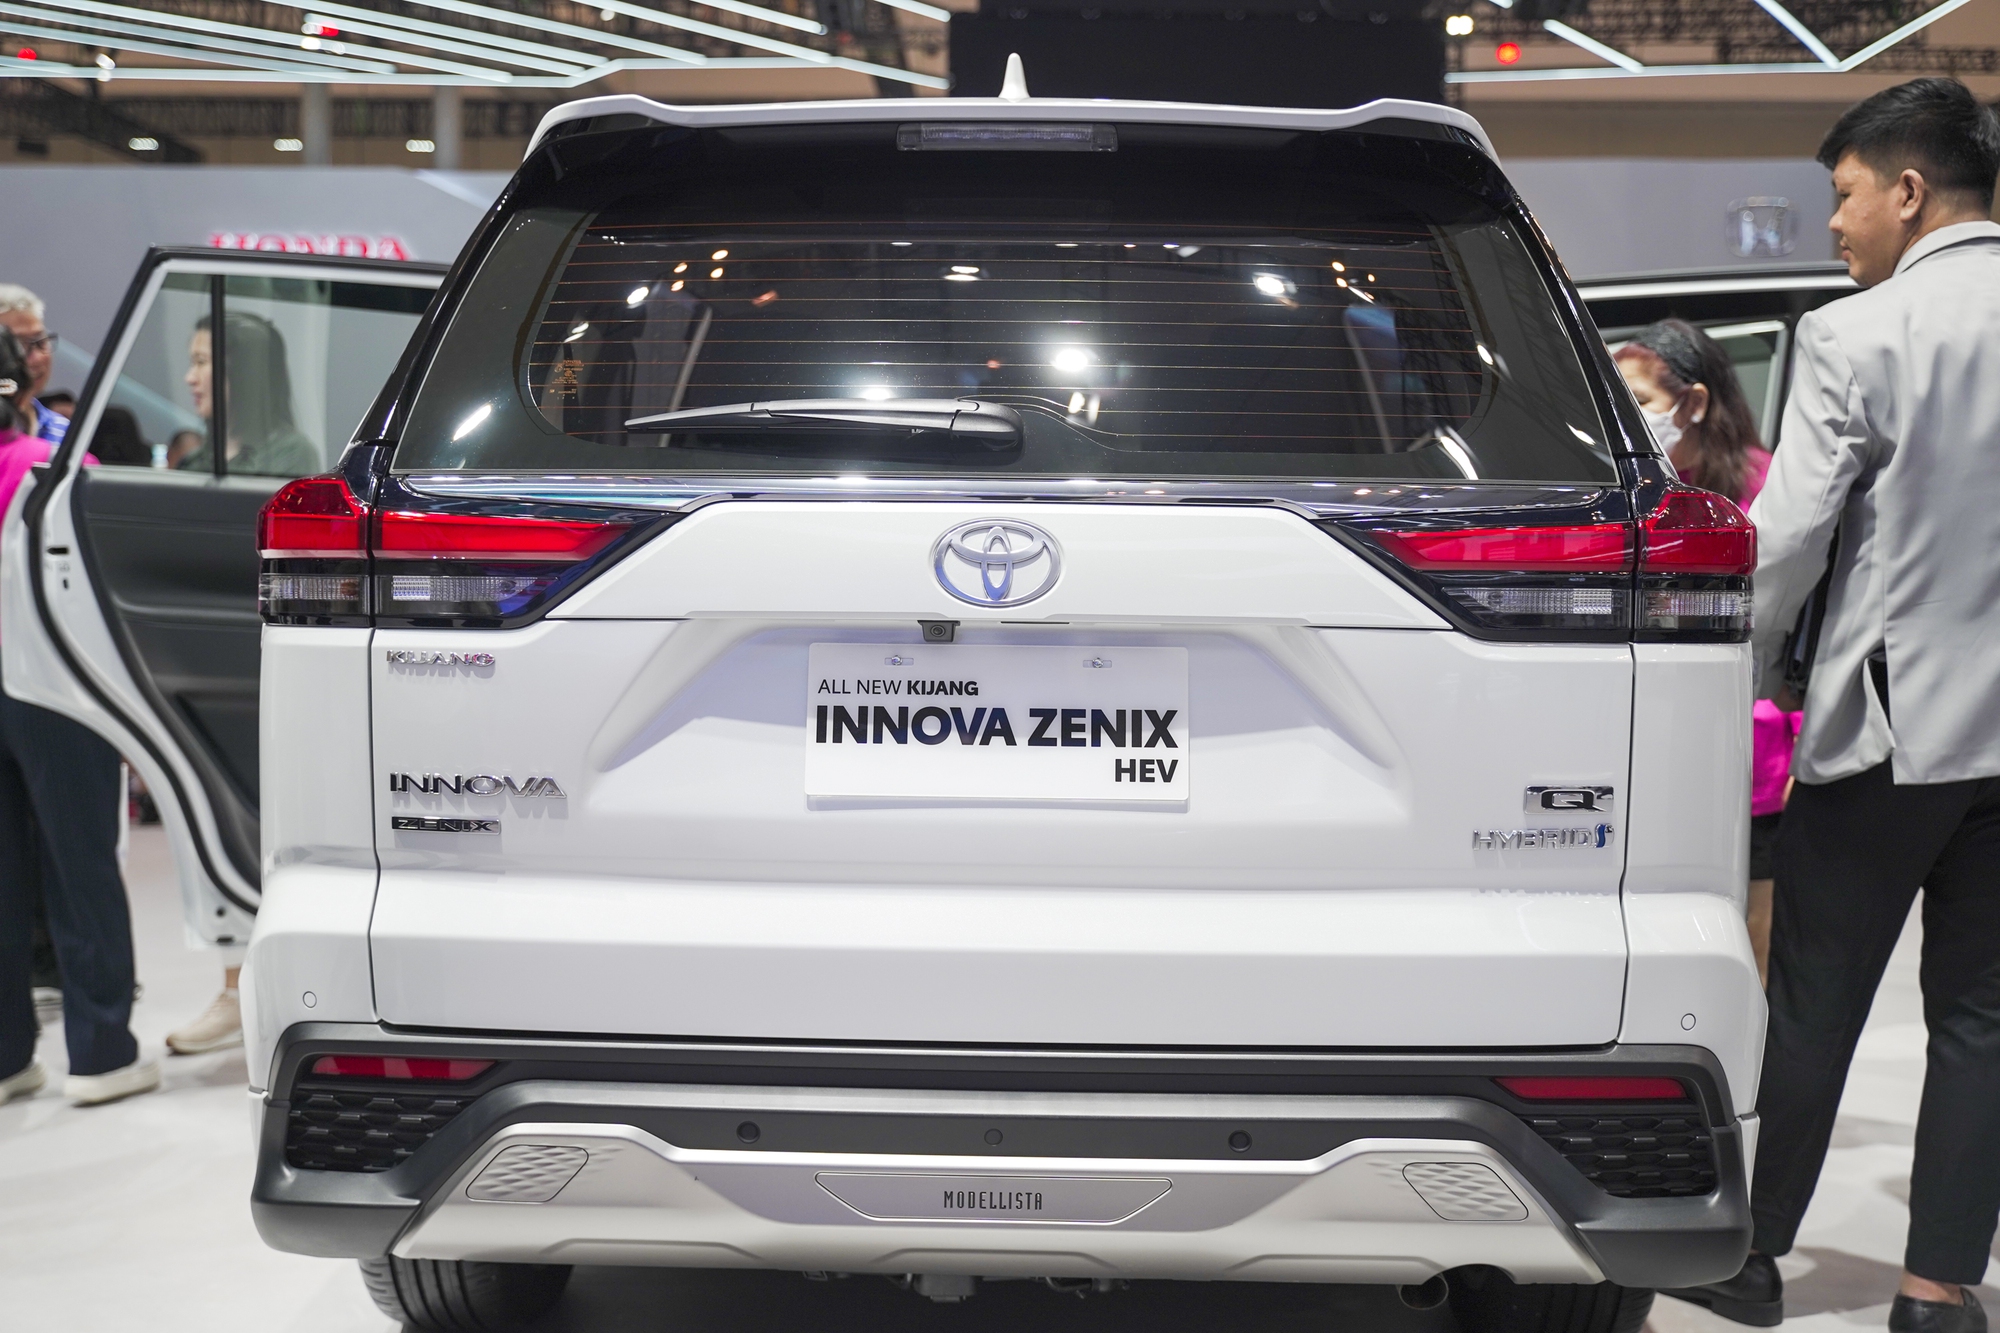 Xem trước Toyota Innova hybrid sắp về Việt Nam: Giá không dưới 1 tỷ đồng, vượt trội về công nghệ so với bản cũ - Ảnh 7.